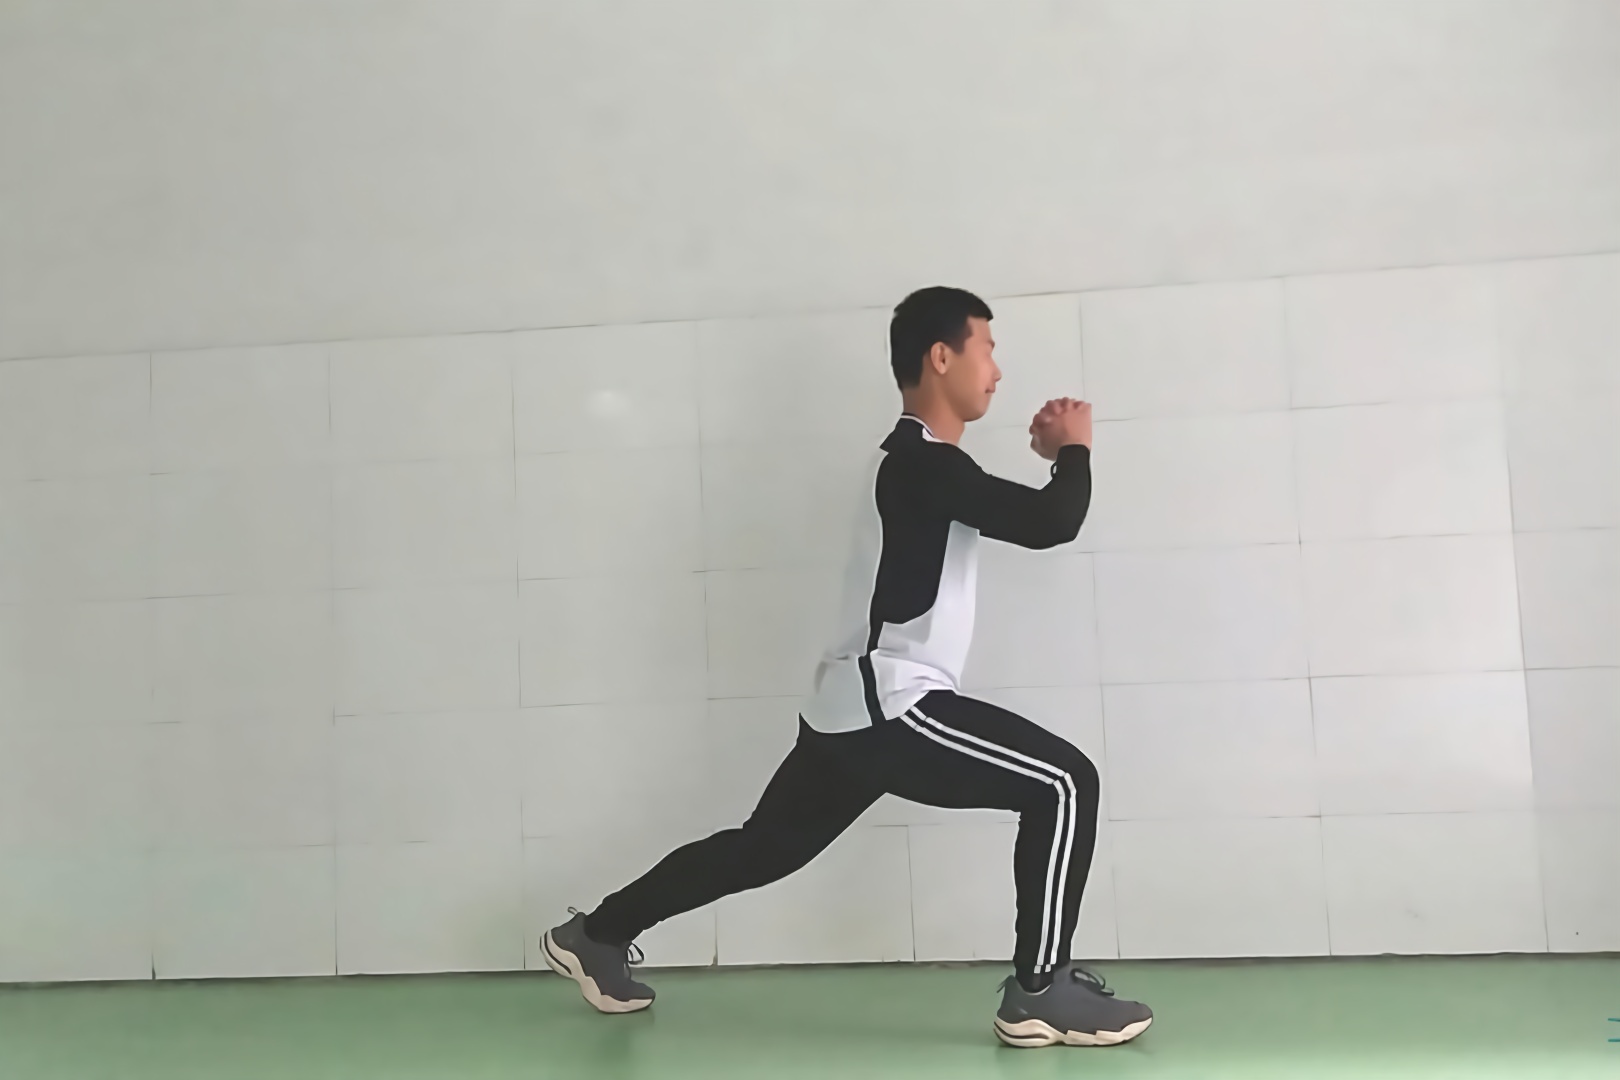 弓步跳,强腰减肥的好动作,但是为了保护膝盖,不要每天练习!